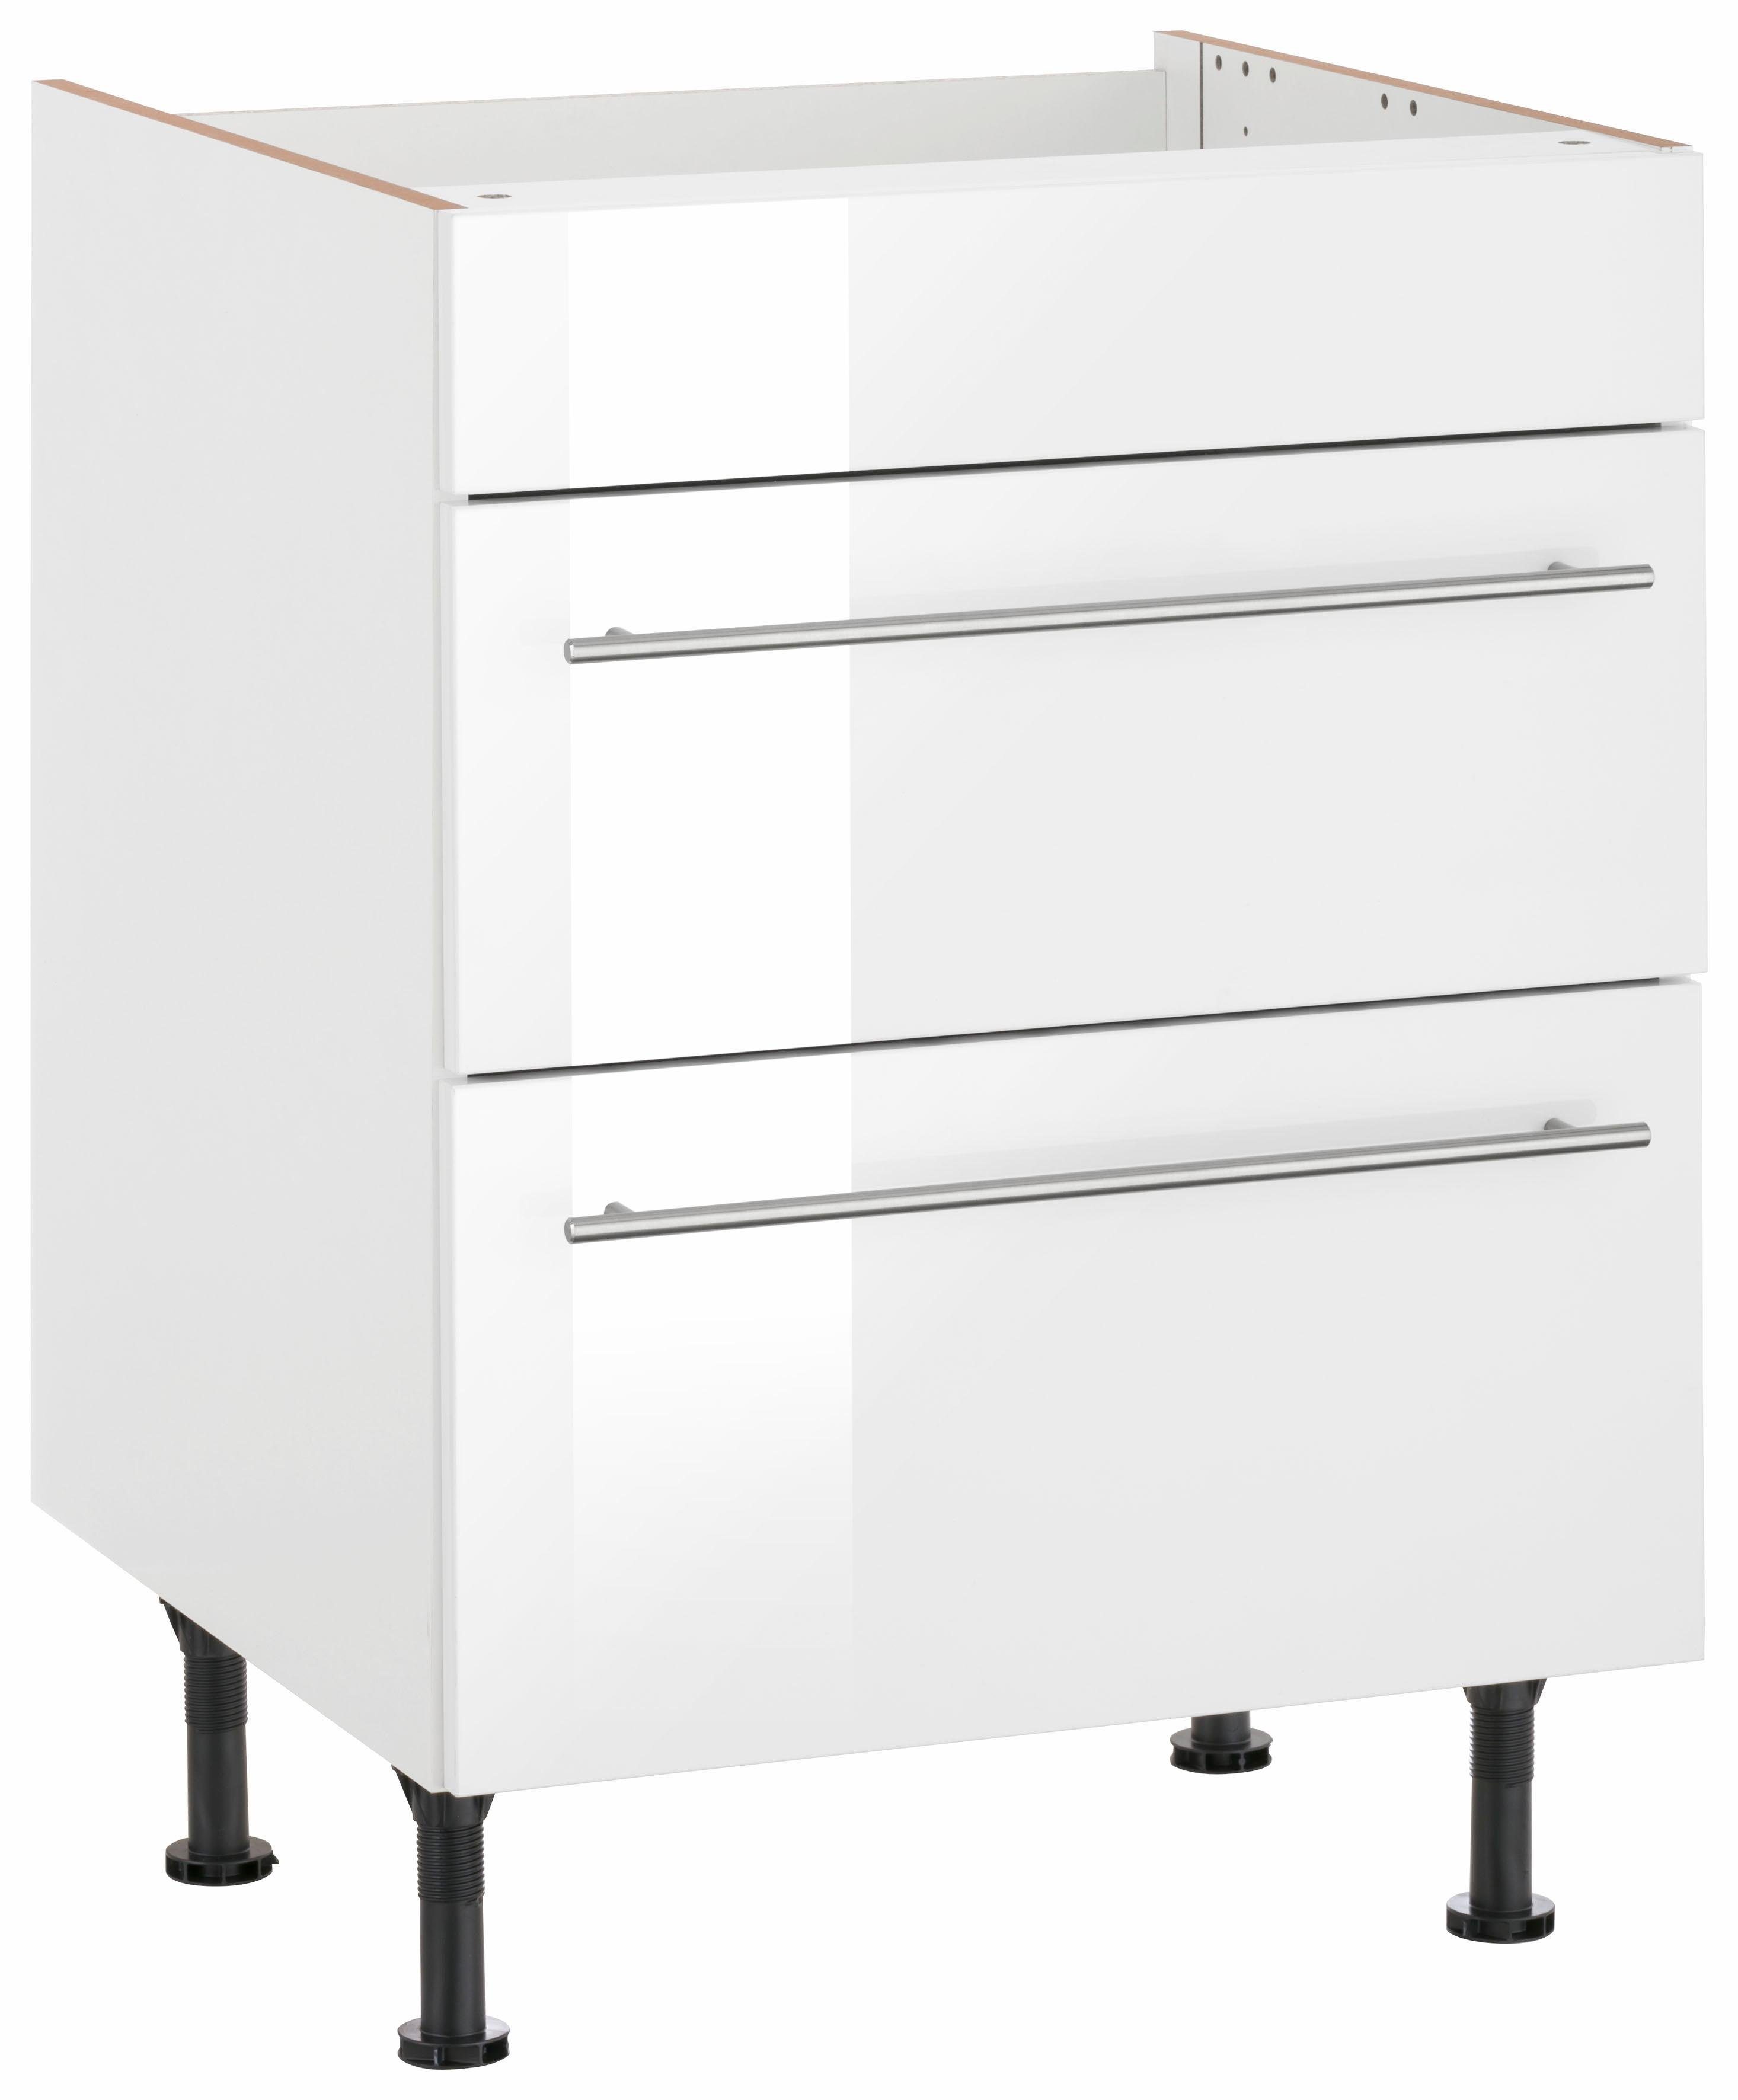 OPTIFIT Kochfeldumbauschrank Bern 60 cm breit, mit 2 Auszügen, mit höhenverstellbare Füße weiß Hochglanz/weiß | weiß